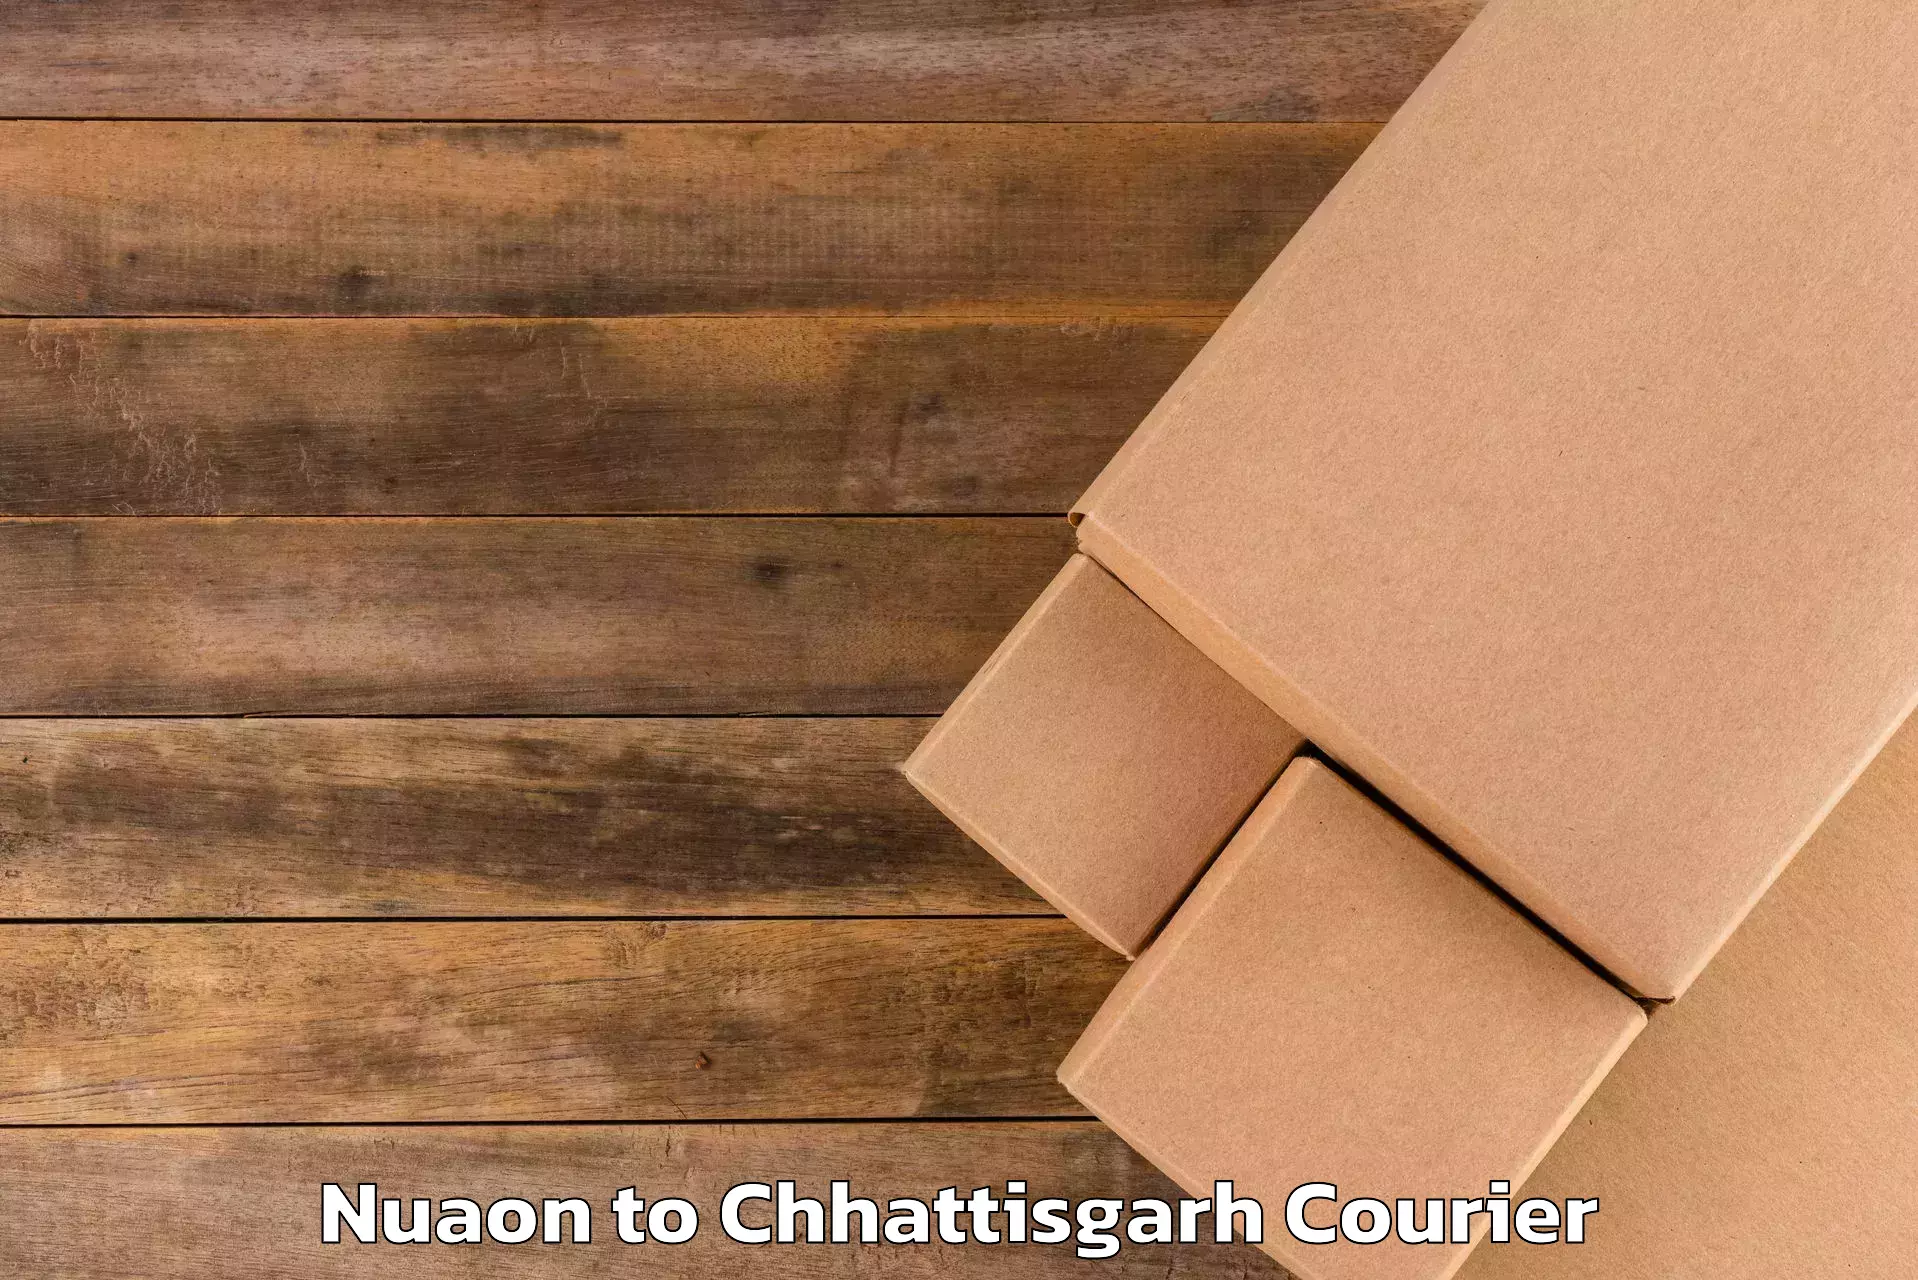 Luggage delivery optimization Nuaon to Ramanujganj